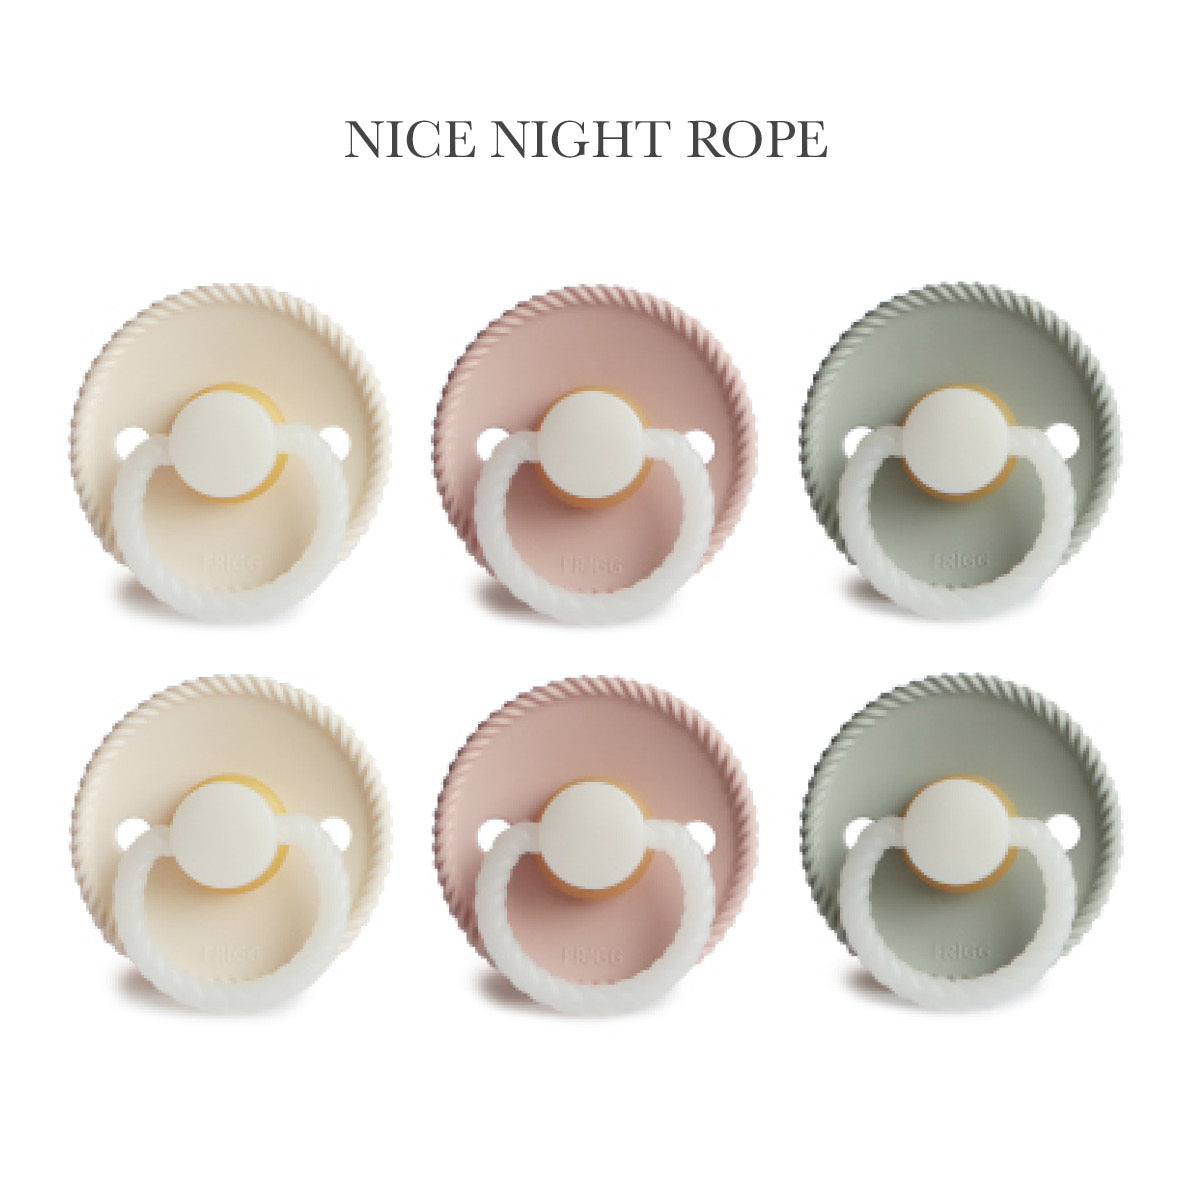 Frigg Mix NIGHT "Nice Night" med 6 runde sutter i str. 2 - Babyinstituttet Shop